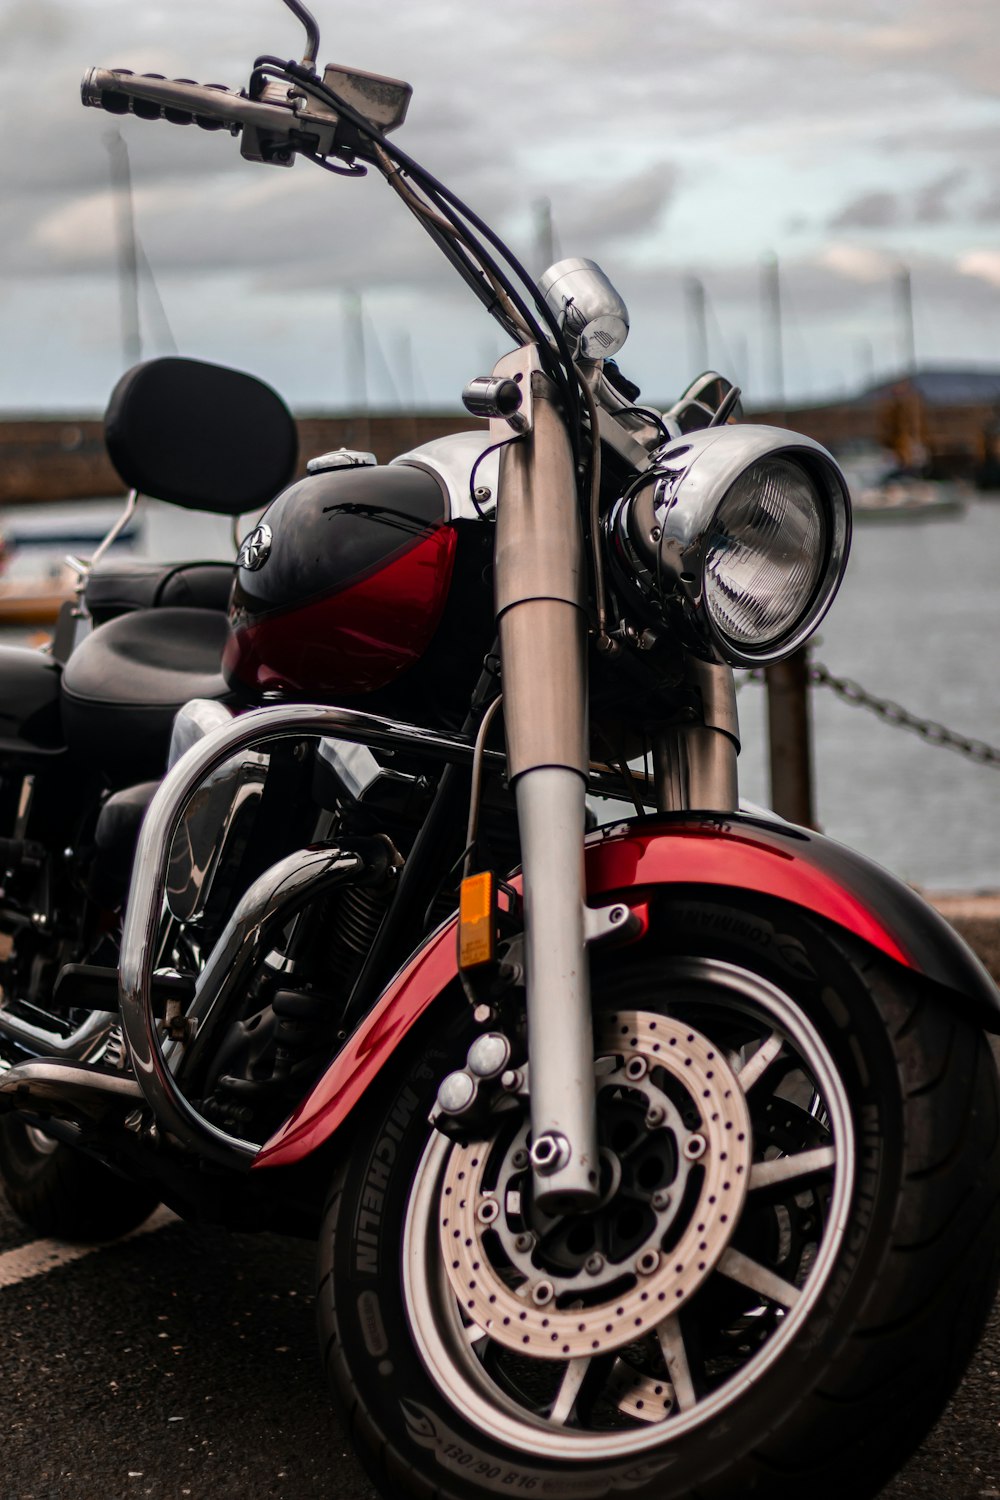 Una motocicleta roja y negra estacionada junto a un cuerpo de agua